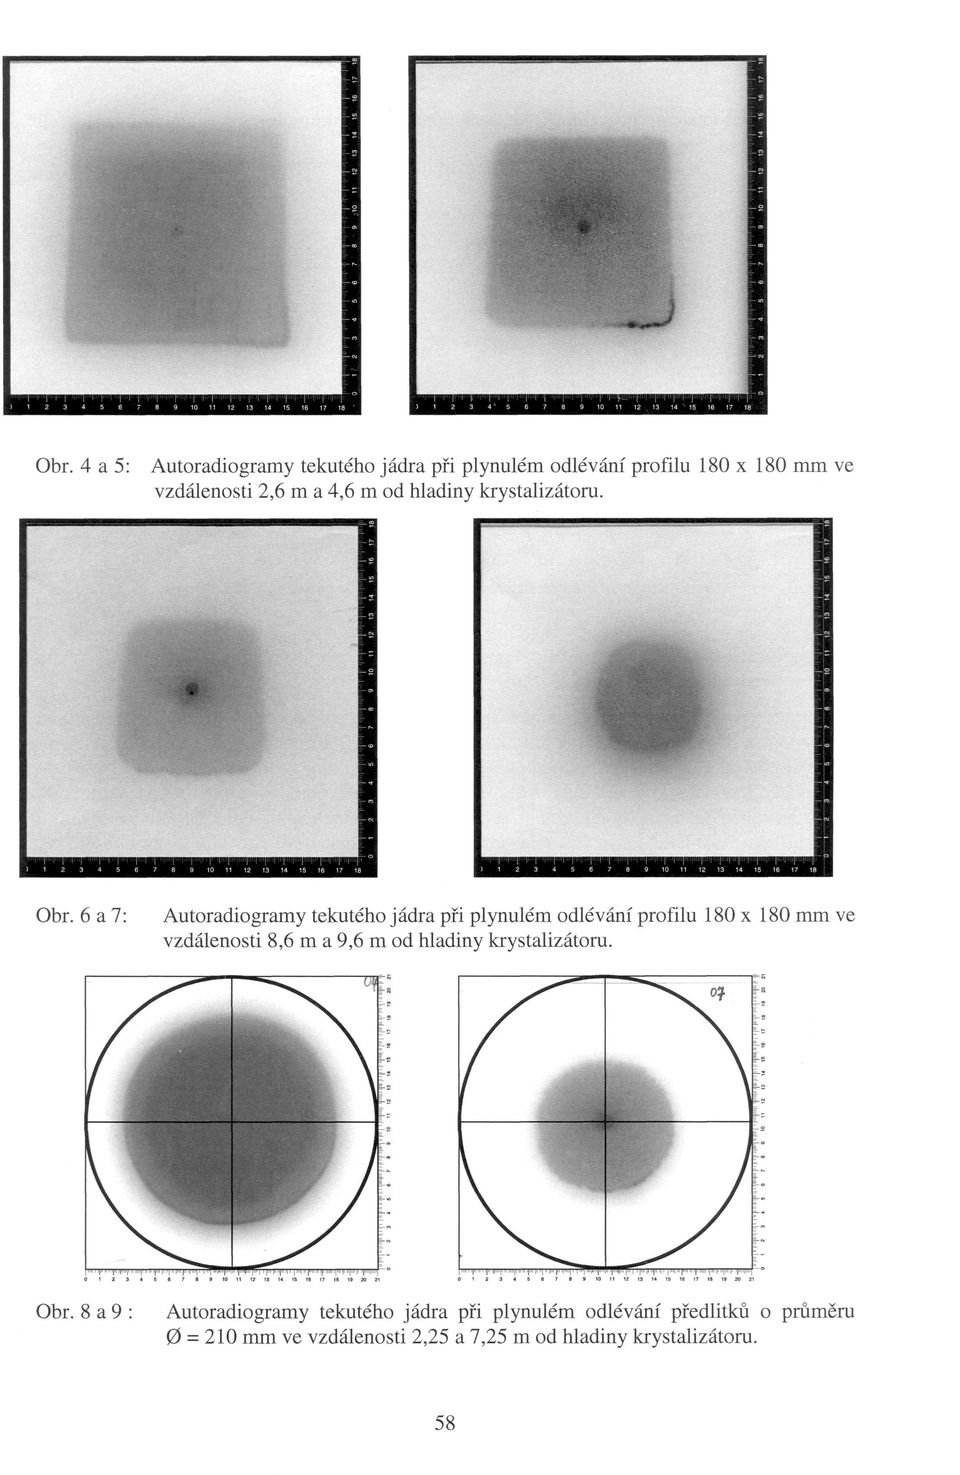 6 a 7: Autoradiogramy tekutého jádra při plynulém odlévání profilu 180 x 180 mm ve vzdálenosti 8,6 m a 9,6 m